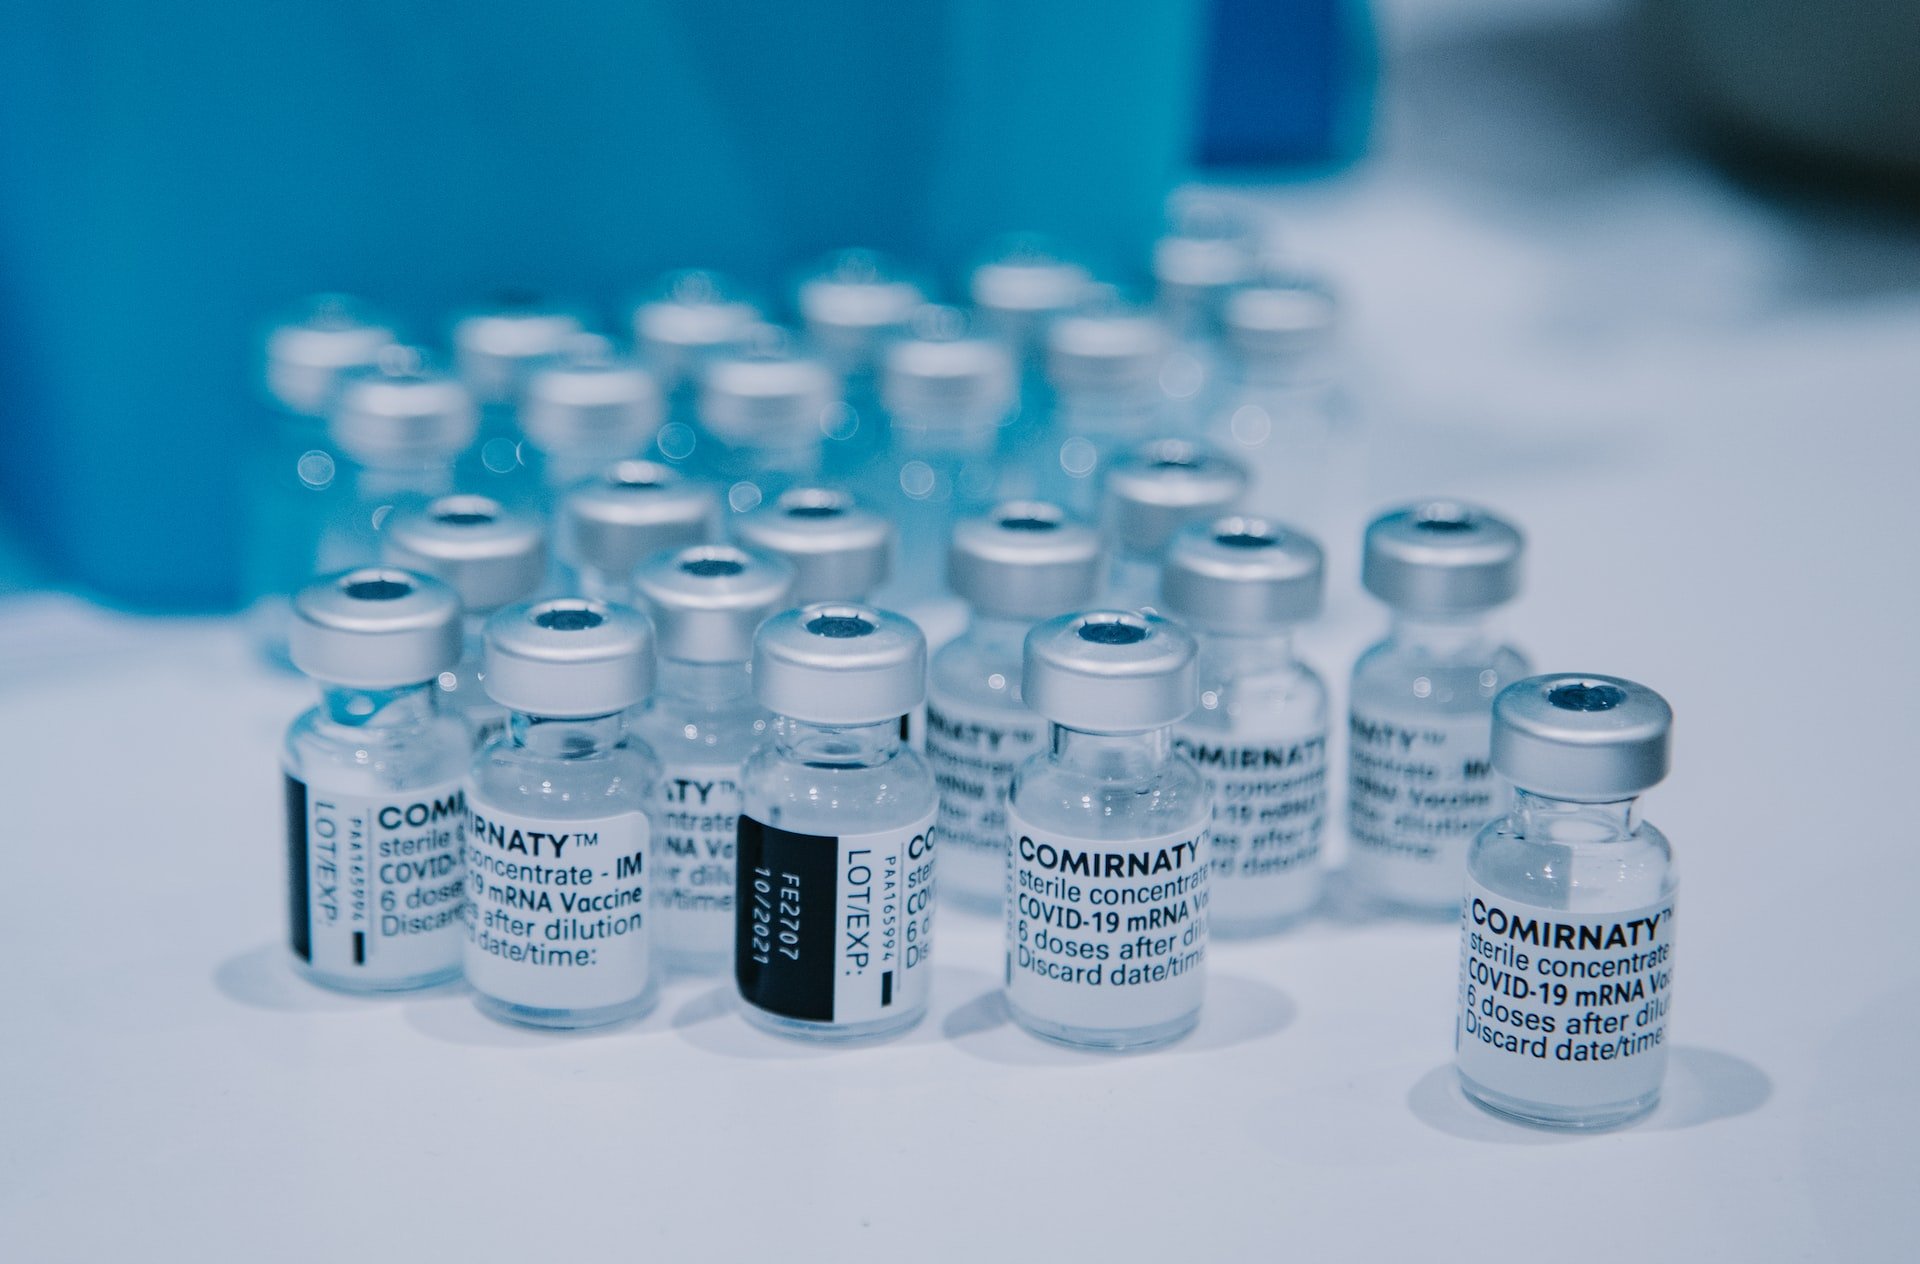 Discursos antivacina vão contra evidências científicas da segurança e importância da vacinação